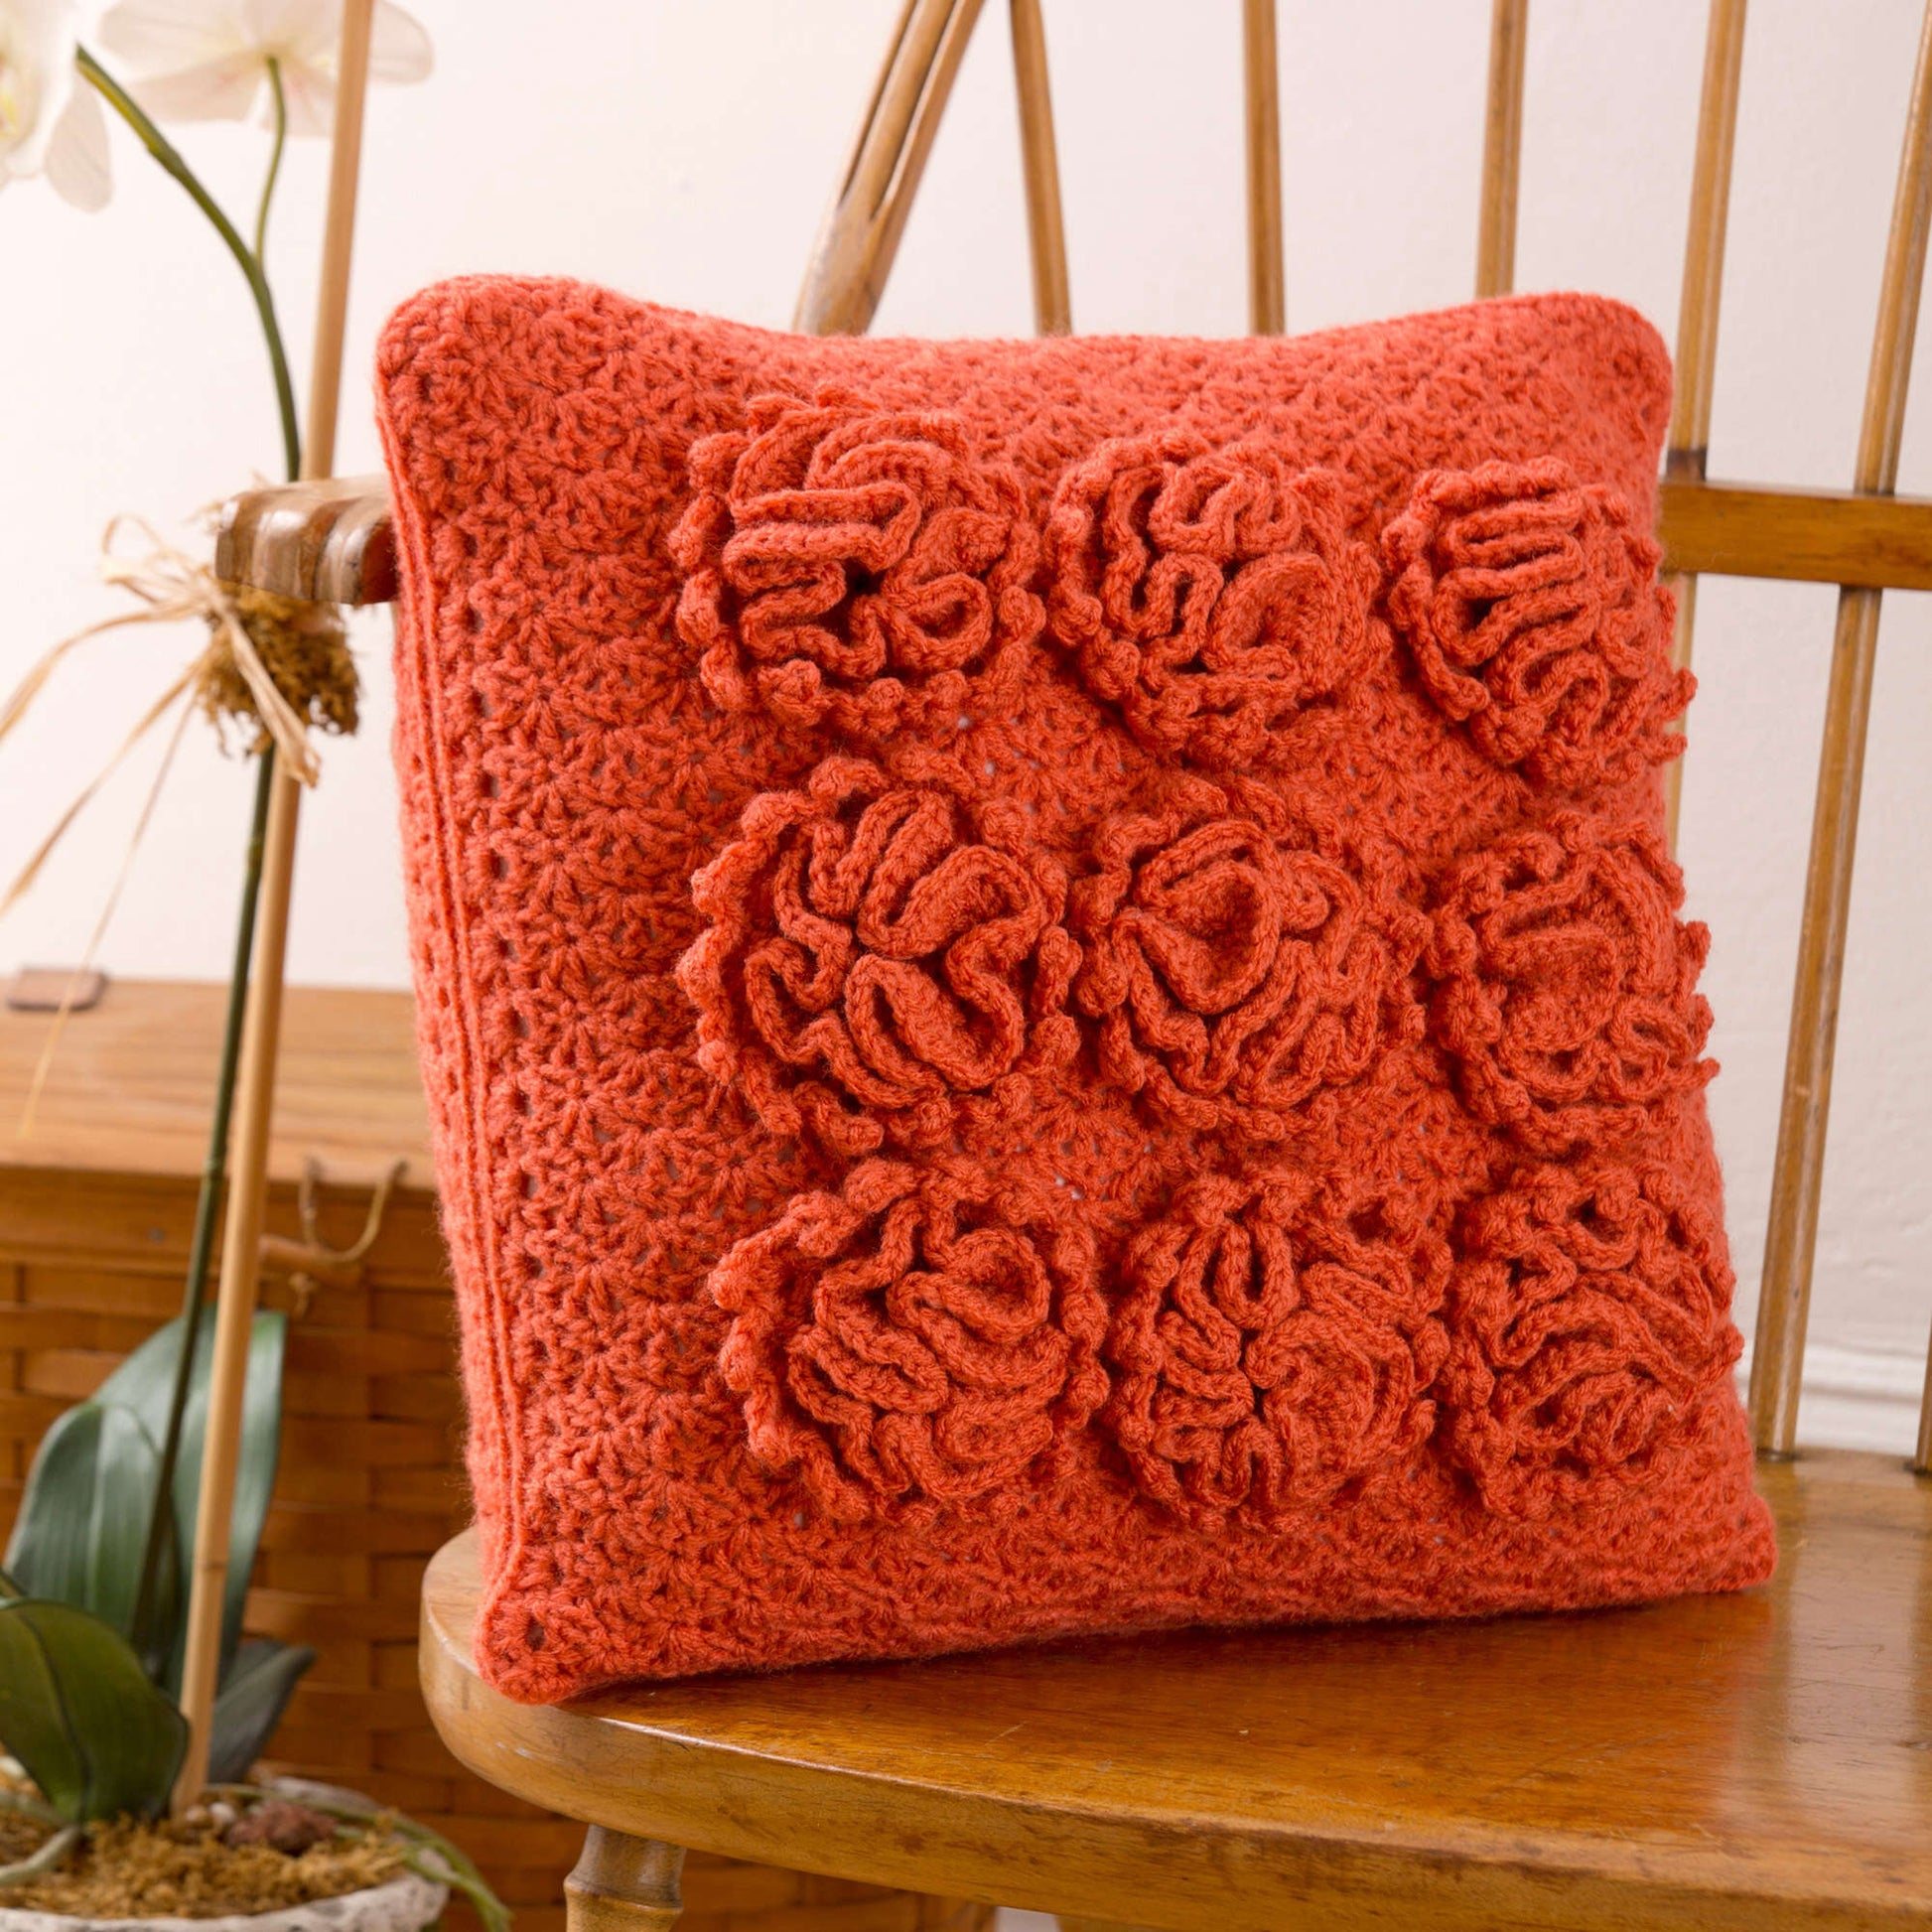 Free Red Heart Crochet Dahlia Pillows Pattern